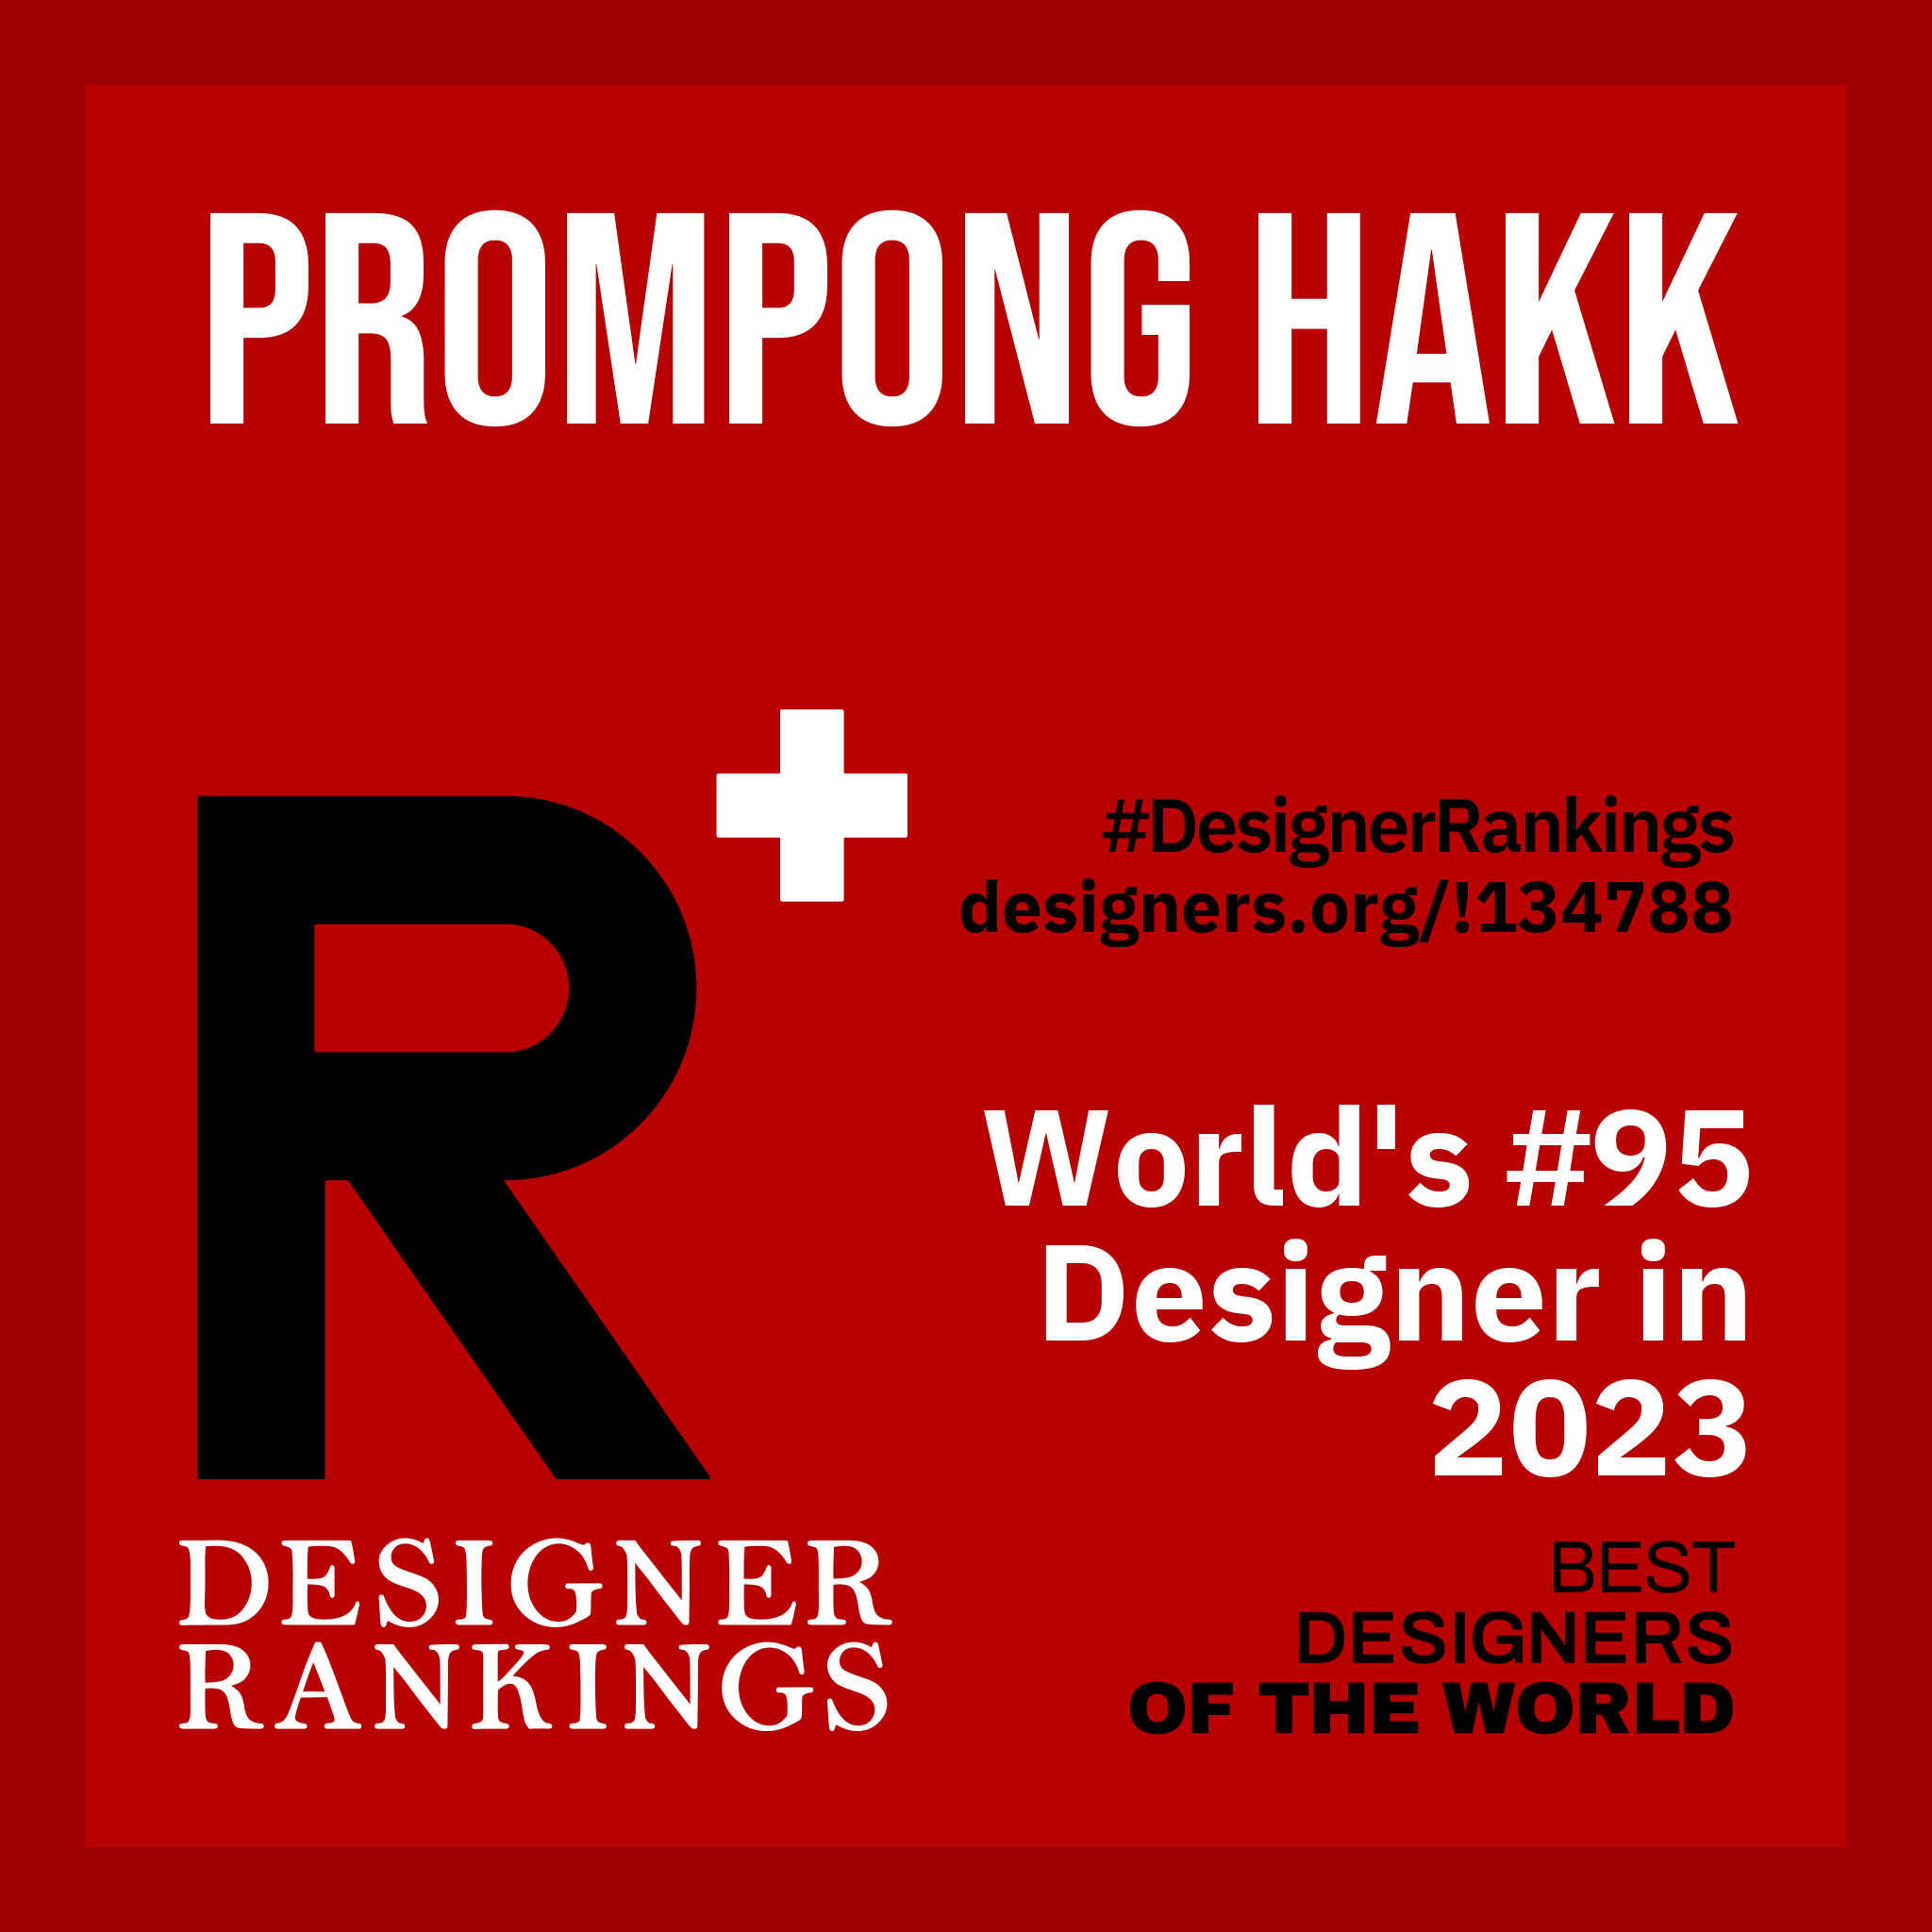 World Design Ranking Certificate for Prompong Hakk #95